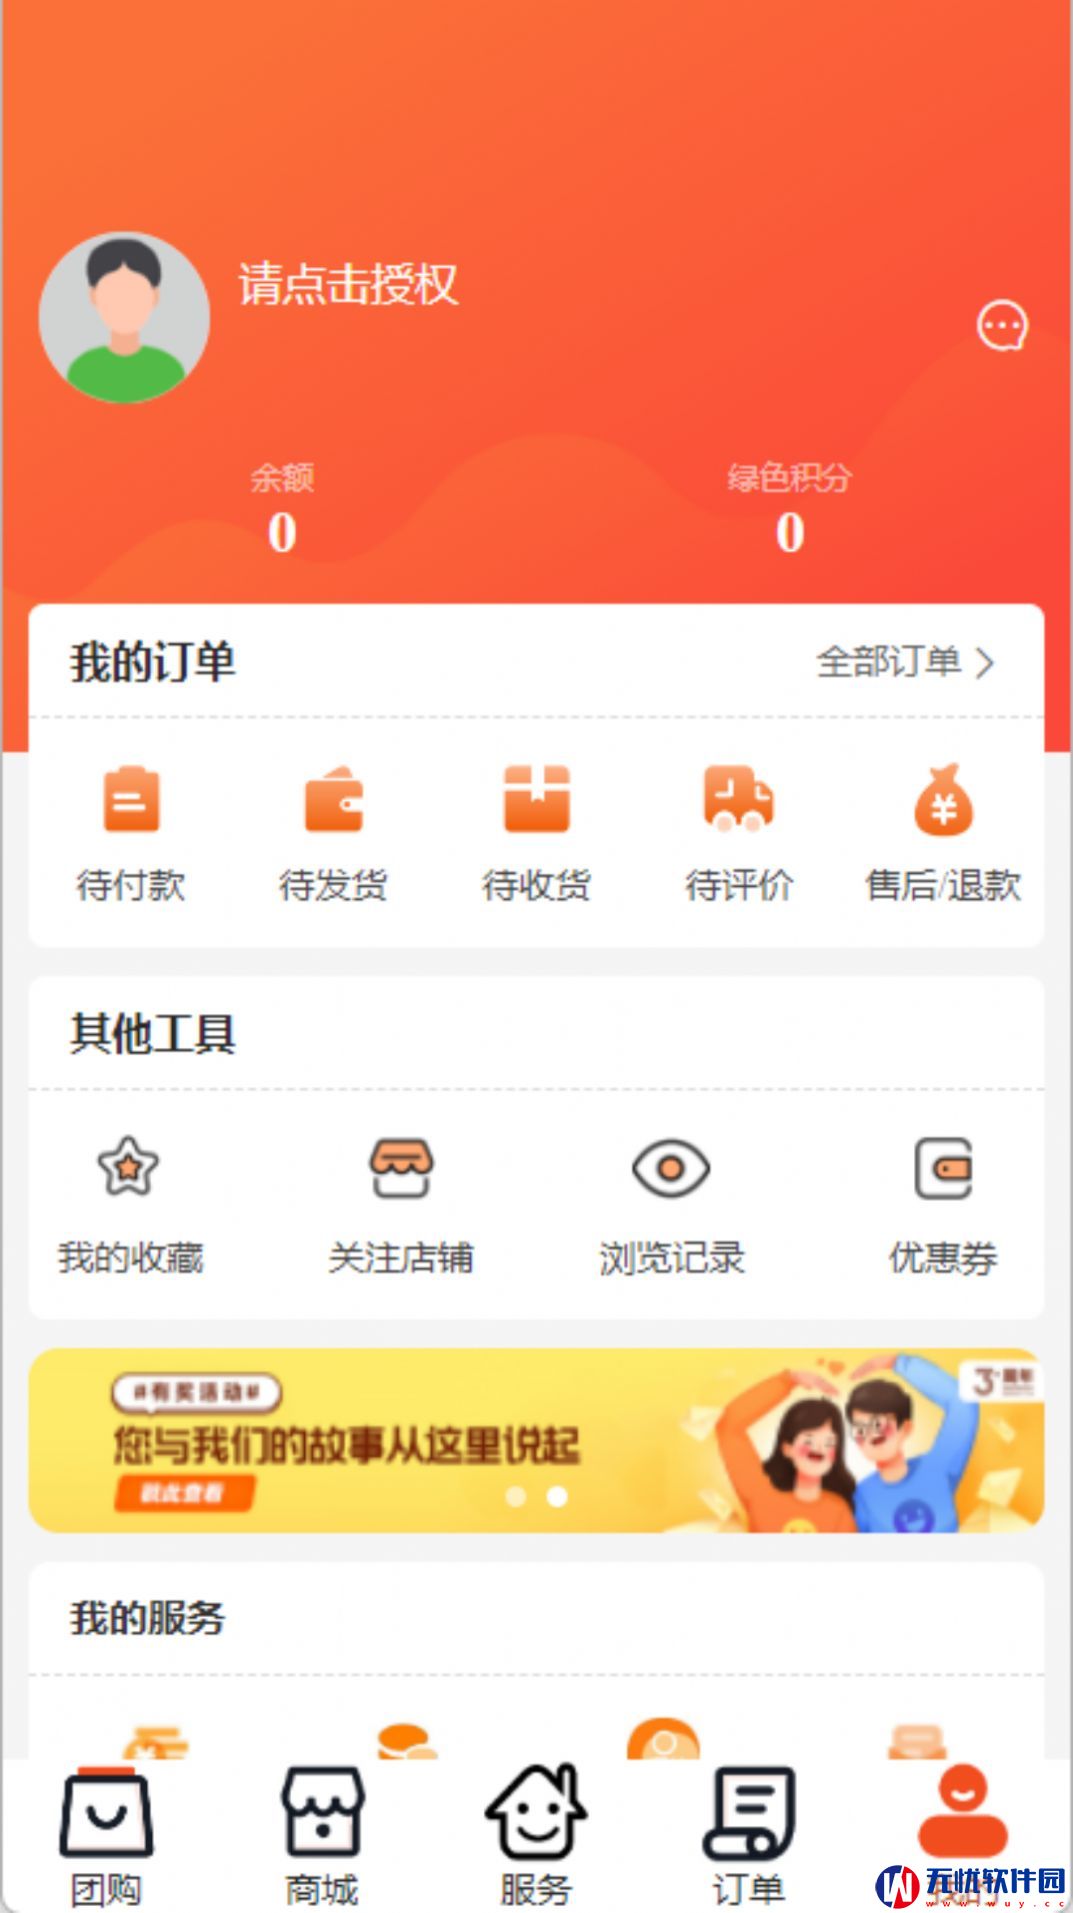 怡蜂恋生活社区平台app图片1